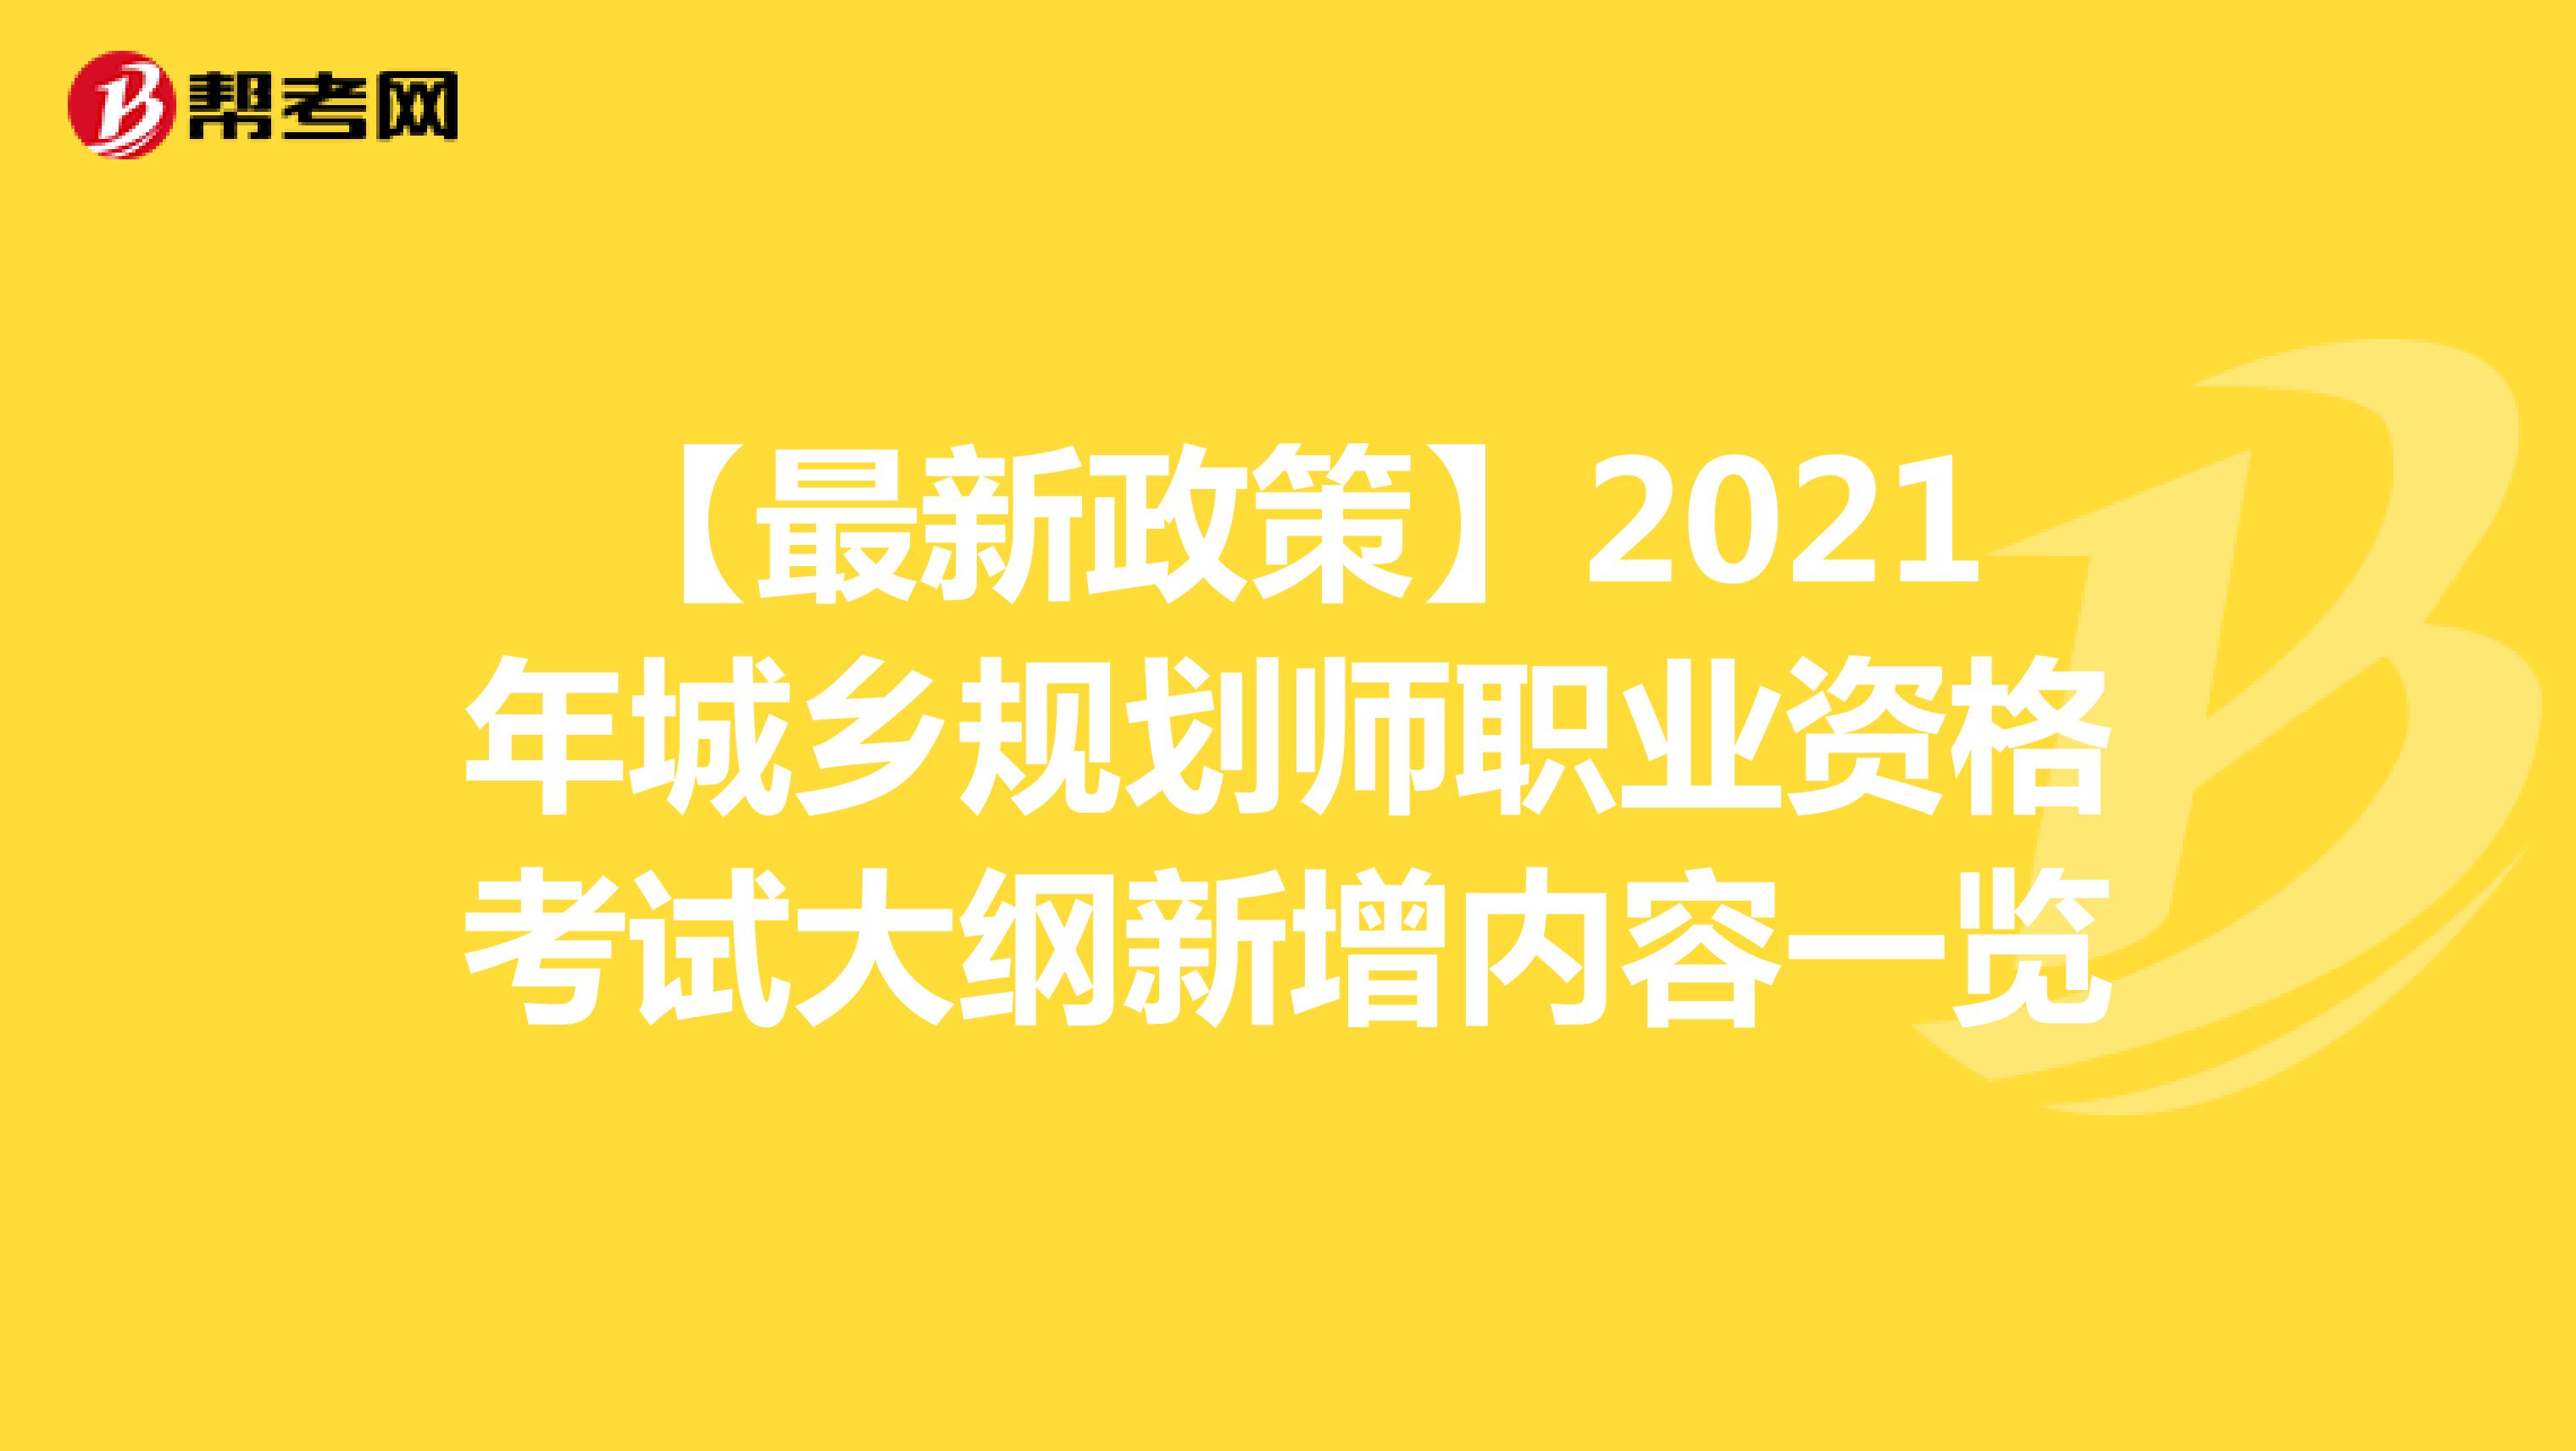 【最新政策】2021年城乡规划师职业资格考试大纲新增内容一览